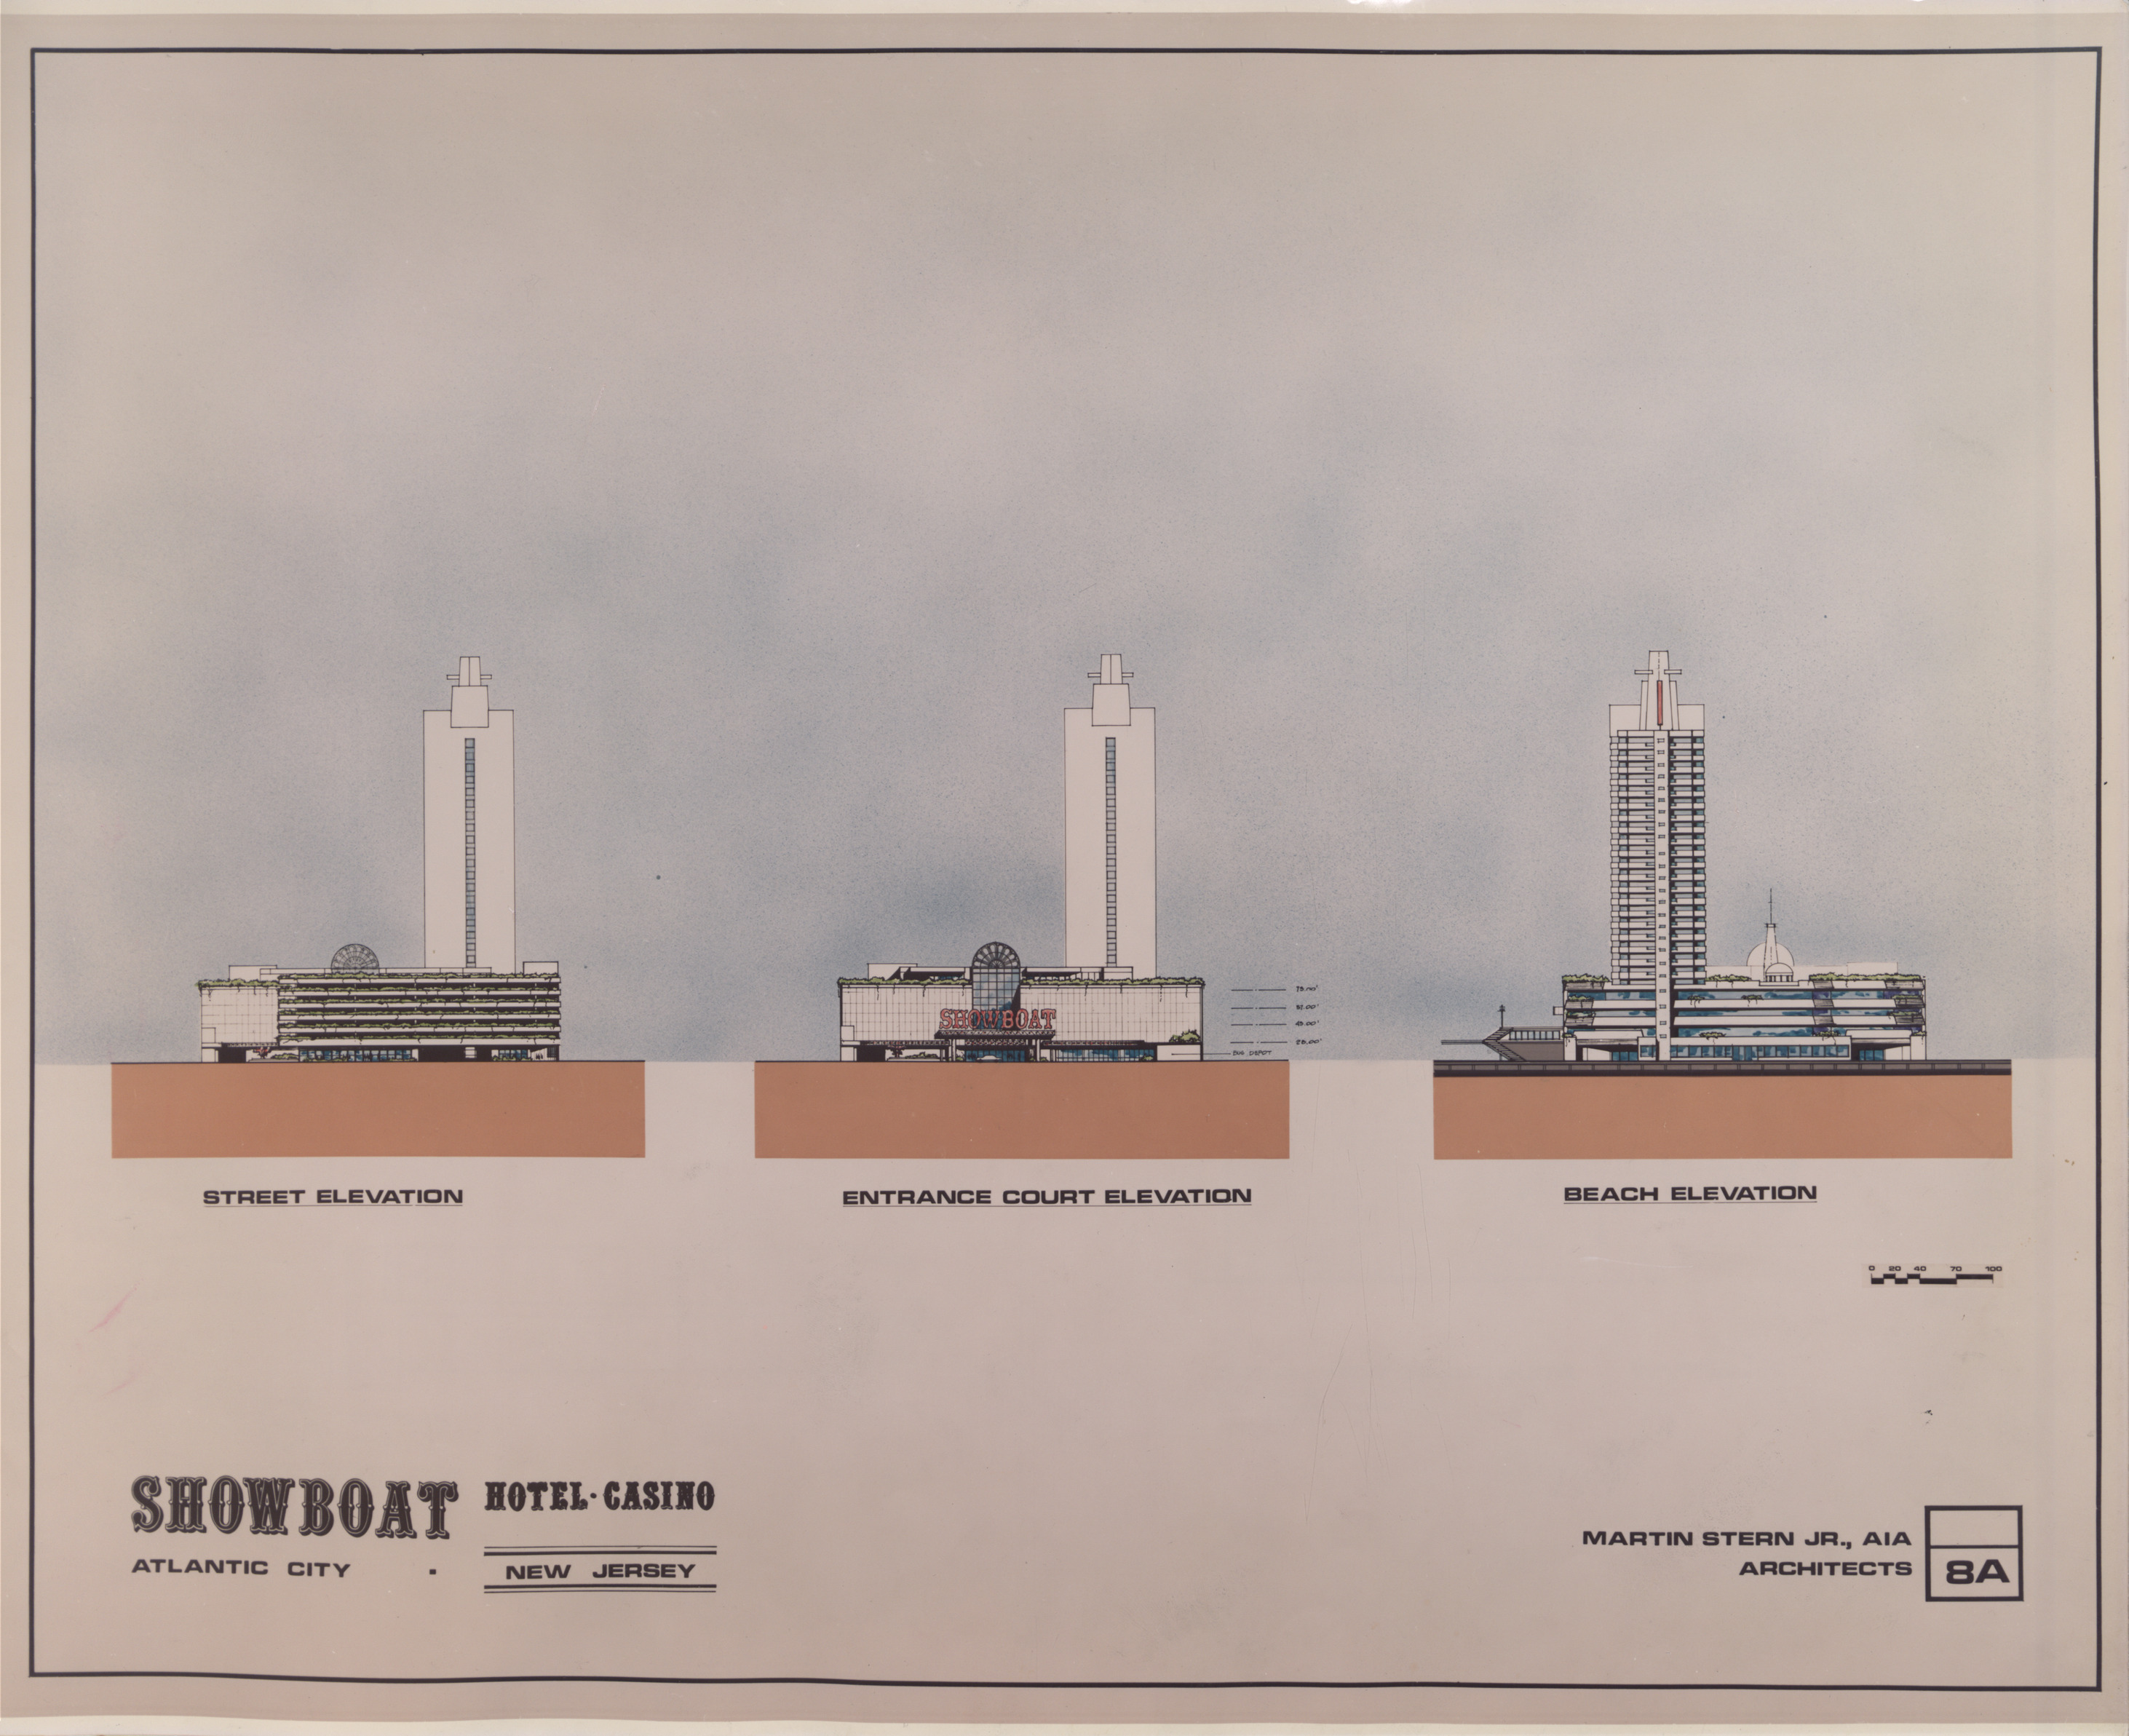 Atlantic City Showboat Hotel Casino Proposal, image 9